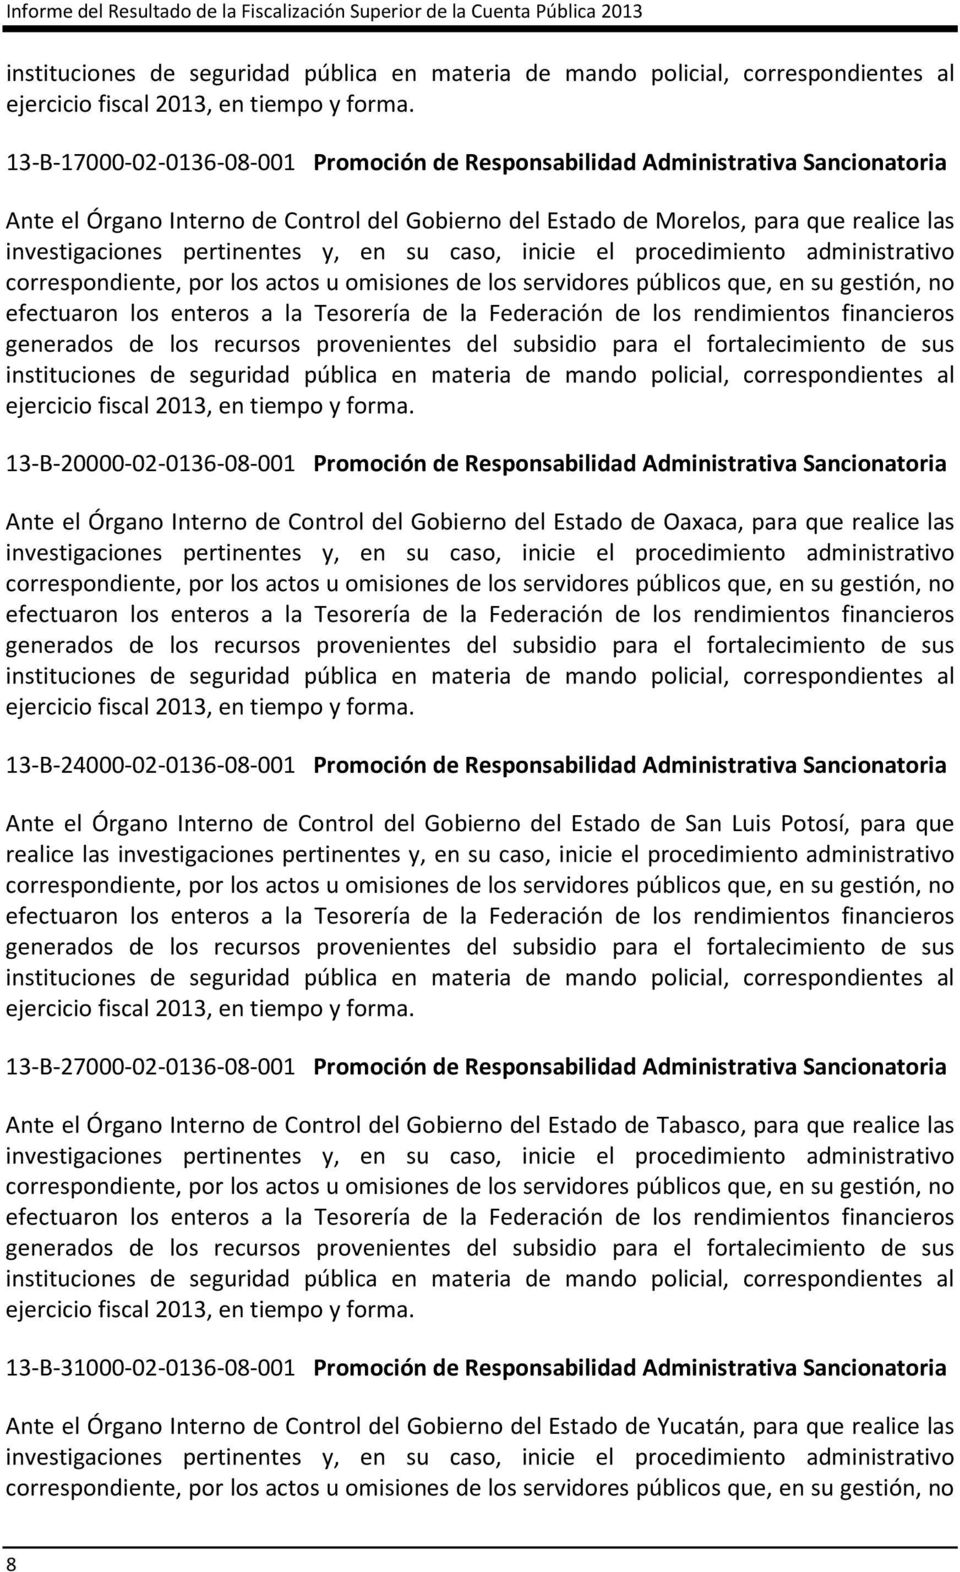 13-B-17000-02-0136-08-001 Promoción de Responsabilidad Administrativa Sancionatoria Ante el Órgano Interno de Control del Gobierno del Estado de Morelos, para que realice las investigaciones